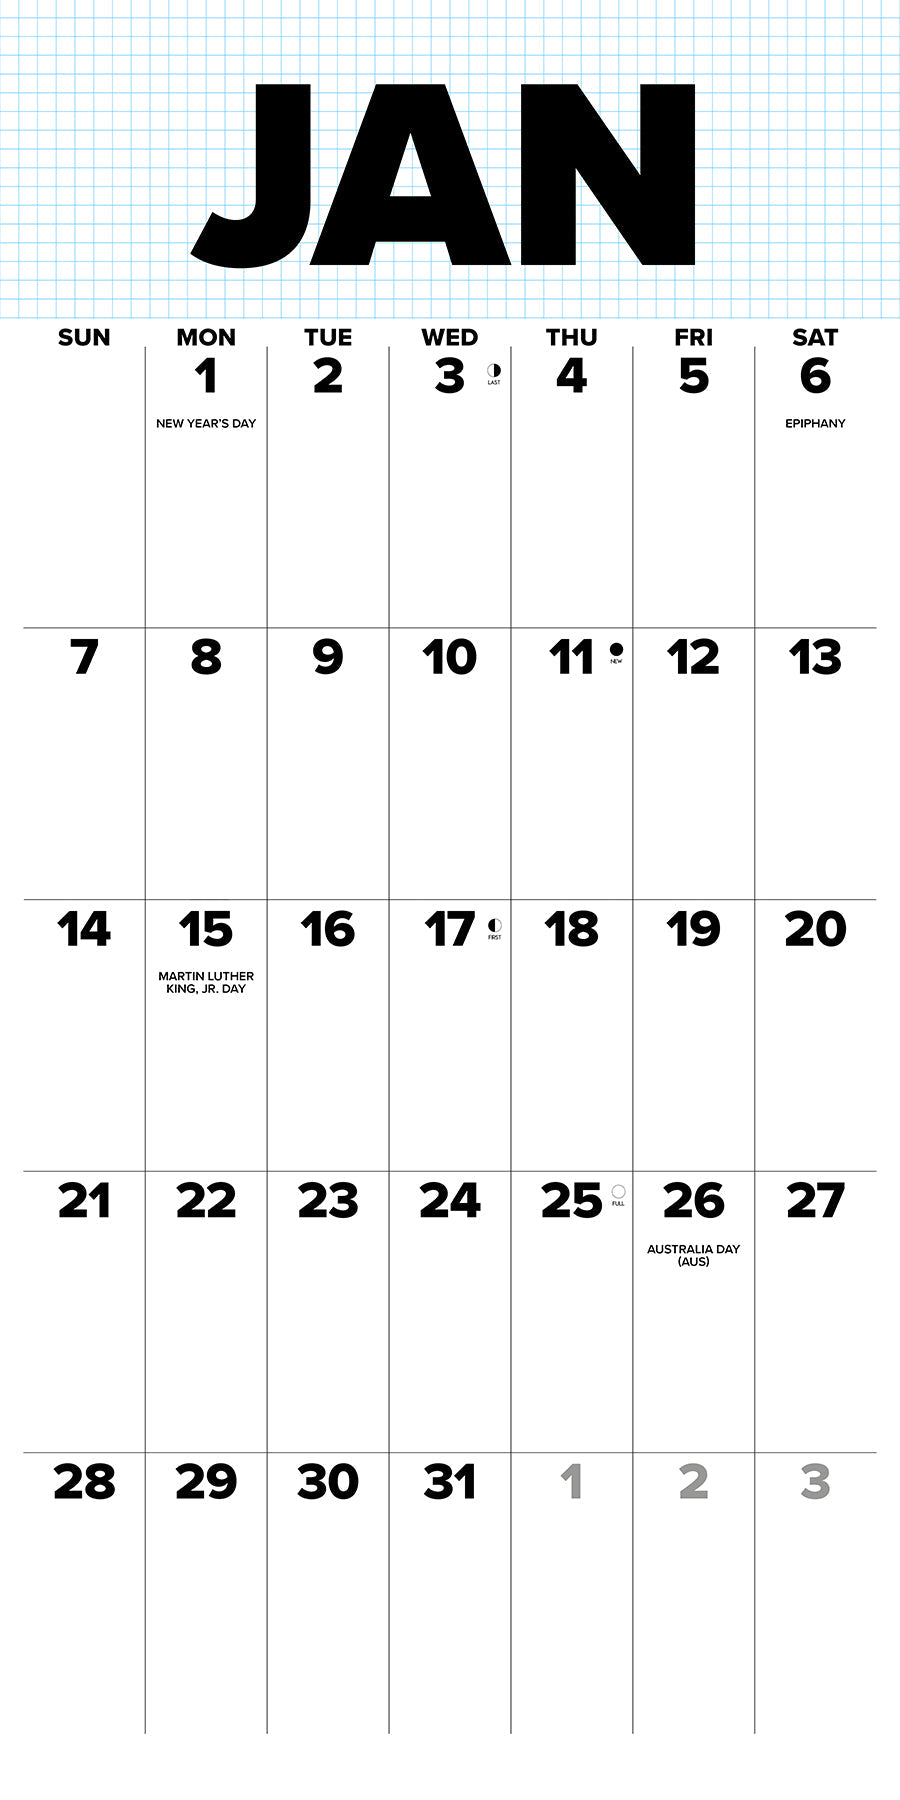 2024 Big Day - Wall Calendar